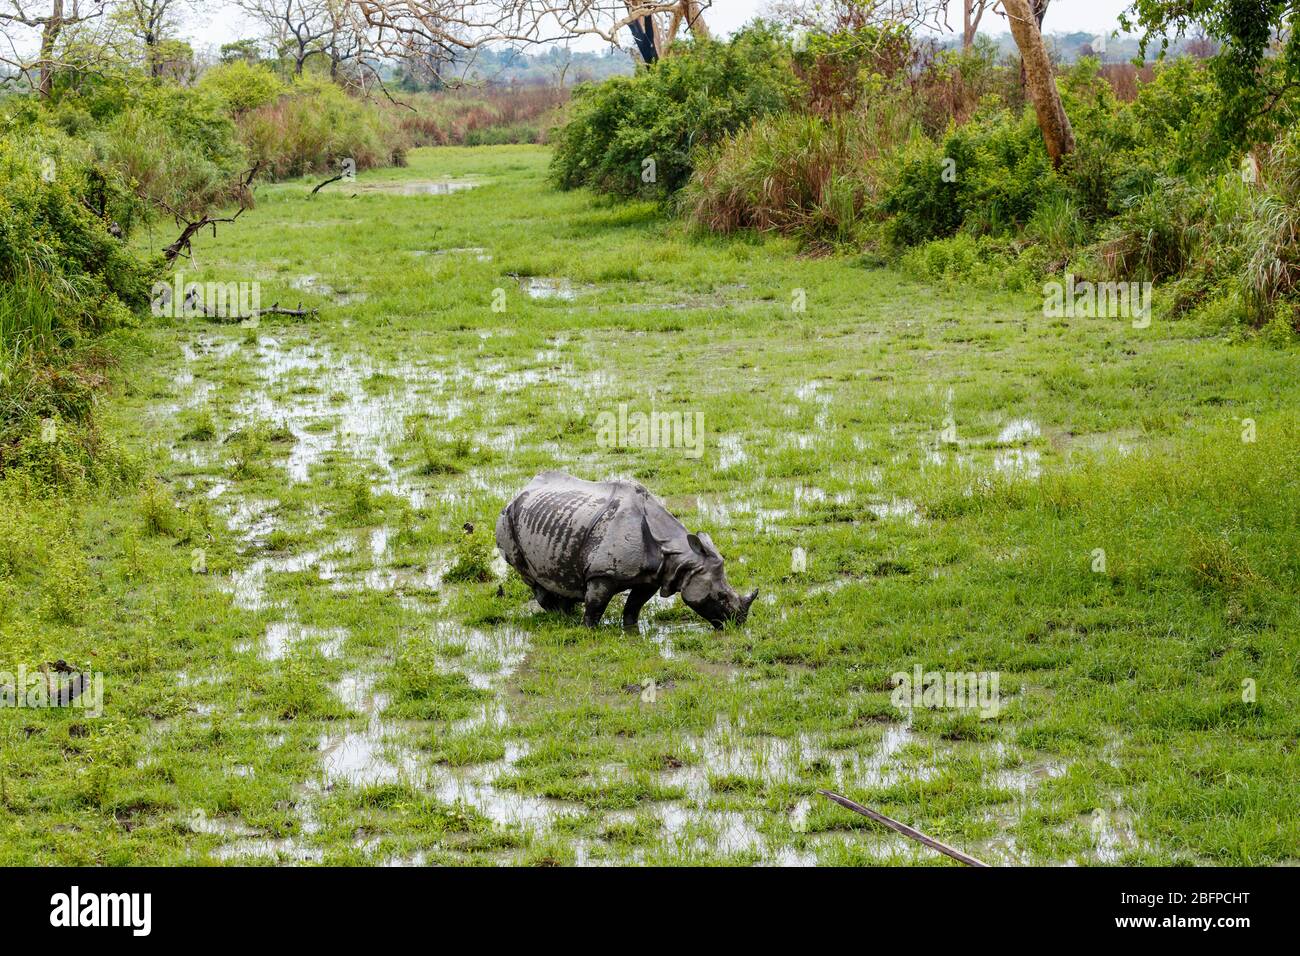 Un rhinocéros indien (Rhinoceros unicornis) se coure dans des zones humides marécageuses du parc national de Kaziranga, Assam, dans le nord-est de l'Inde Banque D'Images